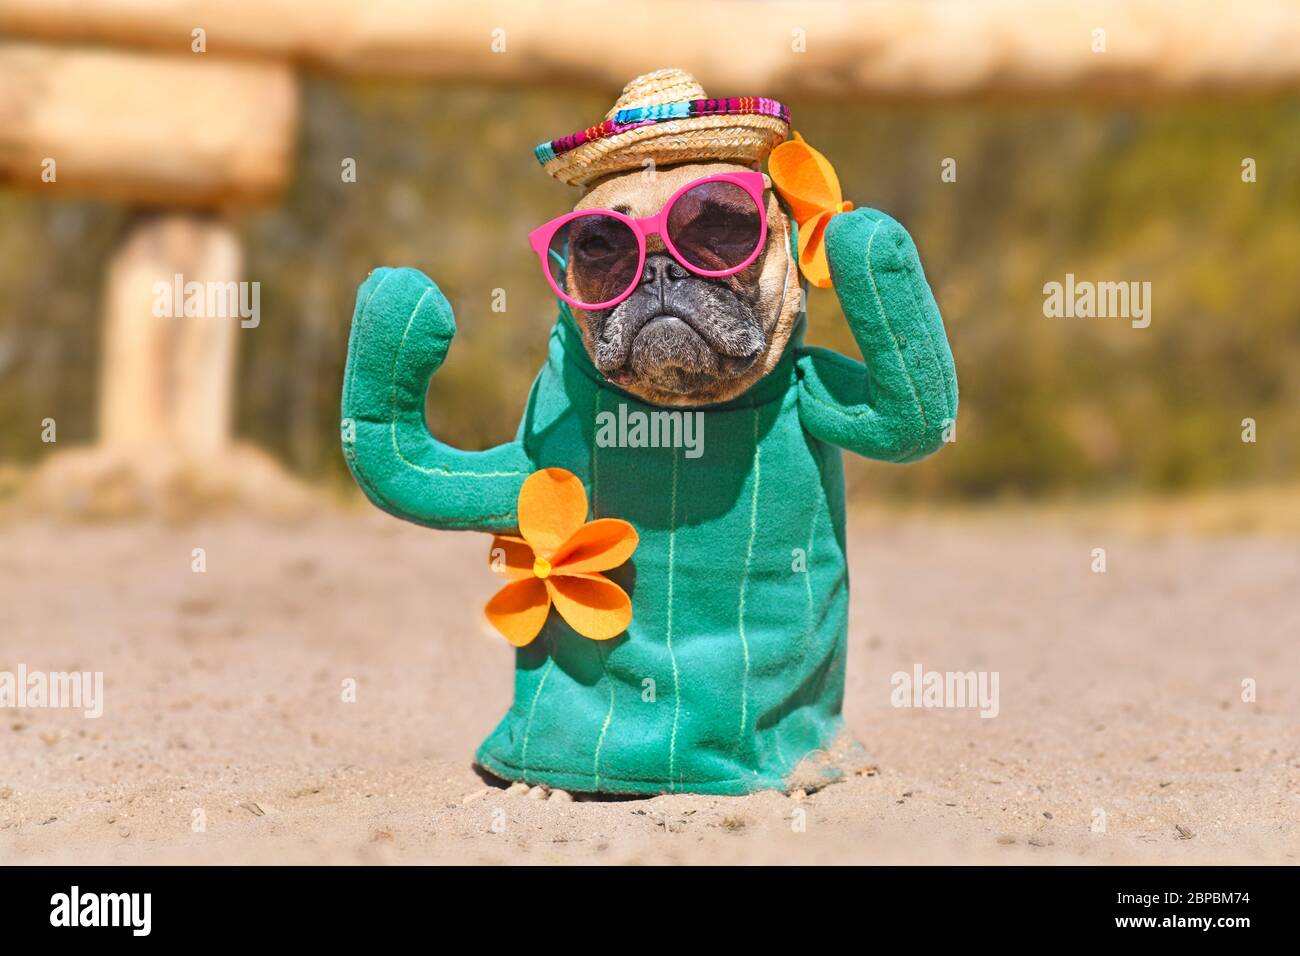 Lustige französische Bulldogge Hund verkleidet mit Kaktus Kostüm mit  gefälschten Armen und orange-fwers tragen Sommer Traw Hut und rosa  Sonnenbrille auf Sand stehen Stockfotografie - Alamy